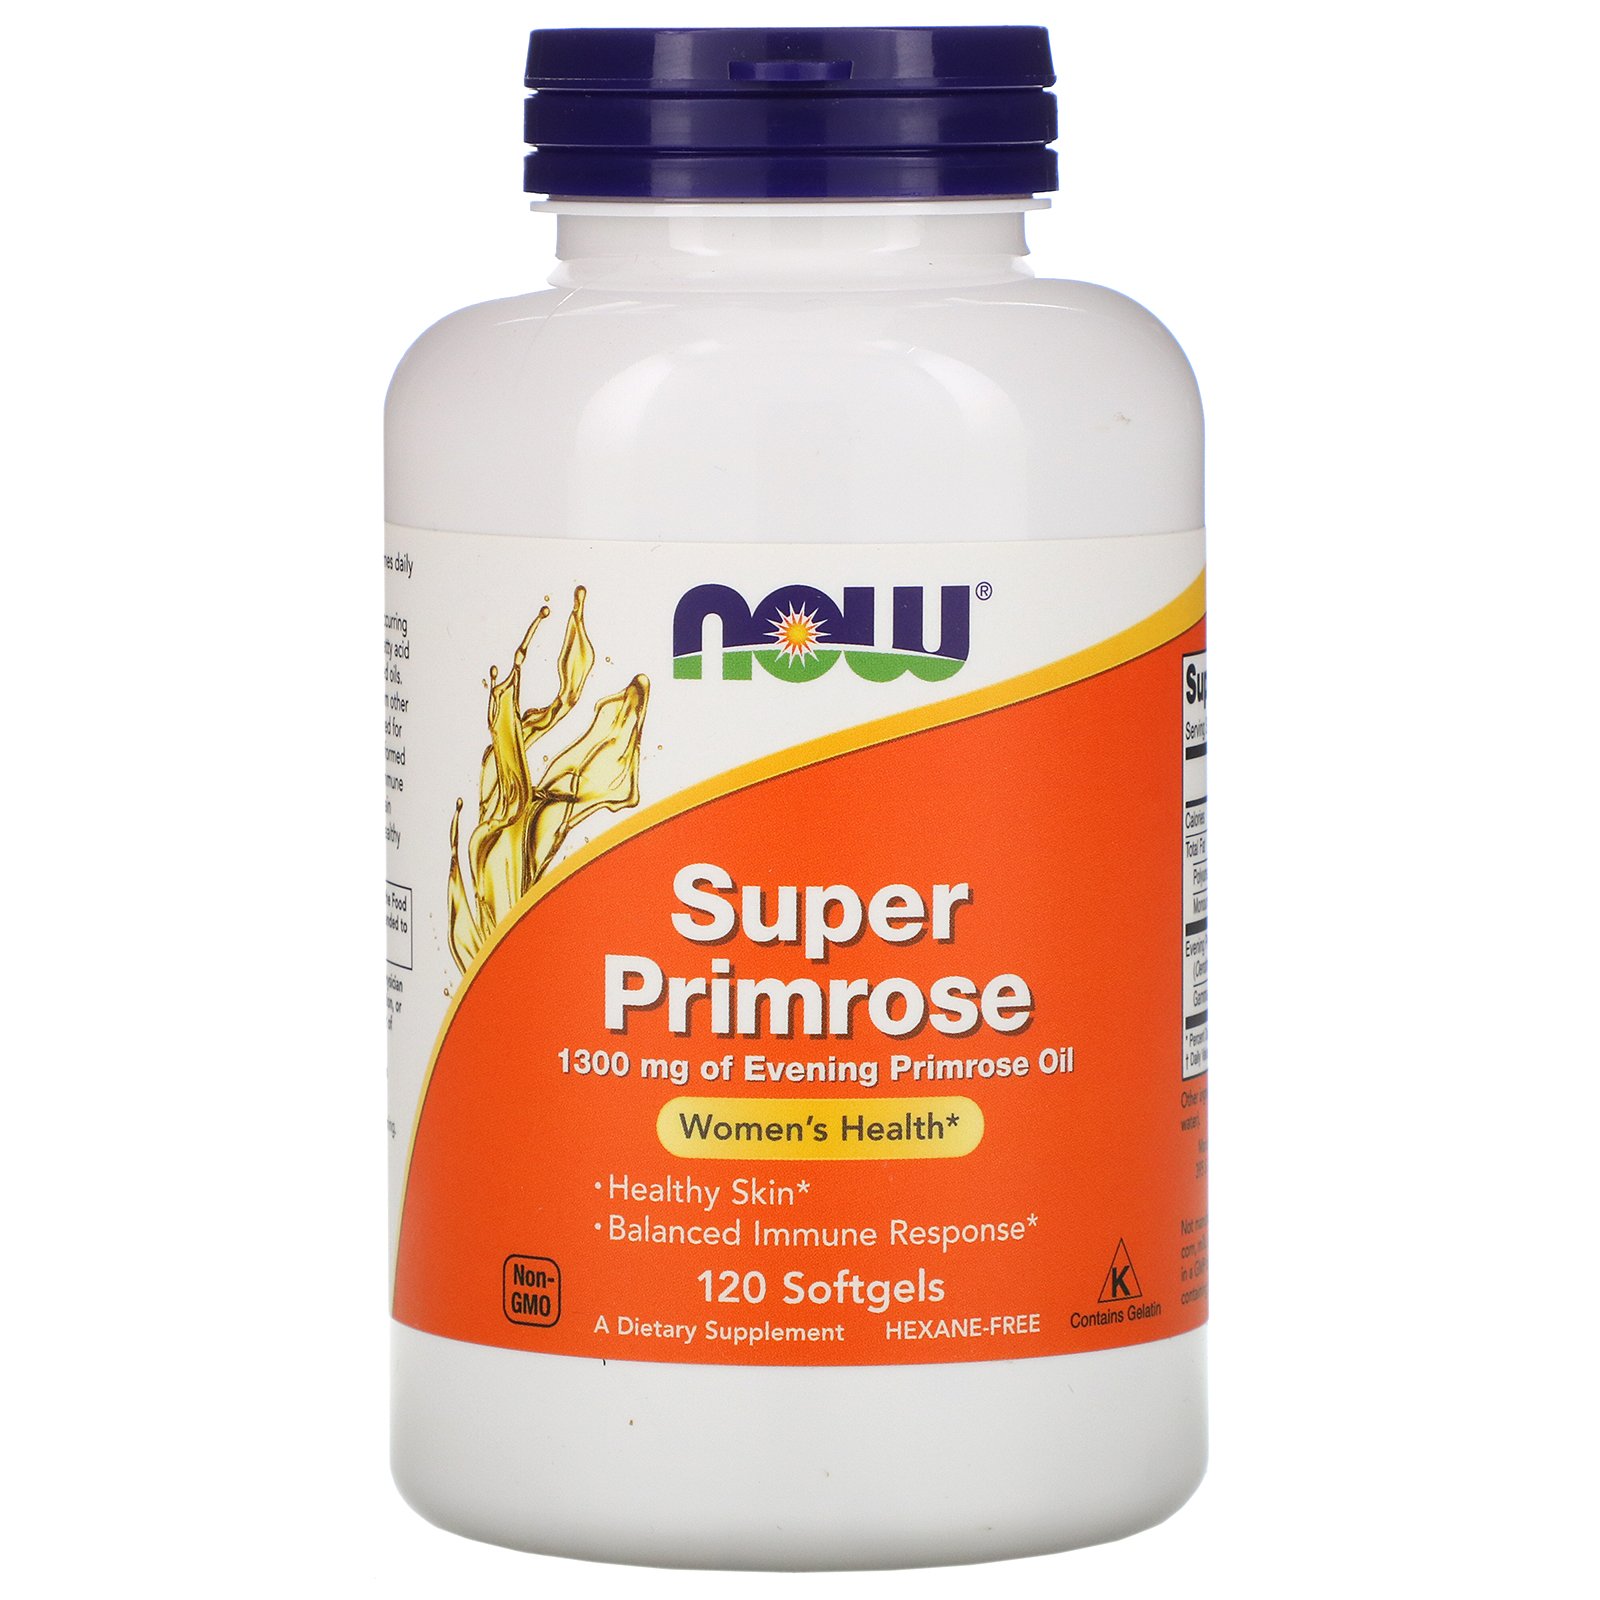 Super Primrose, Примула Вечерняя Масло 1300 мг - 120 желатиновых капсул